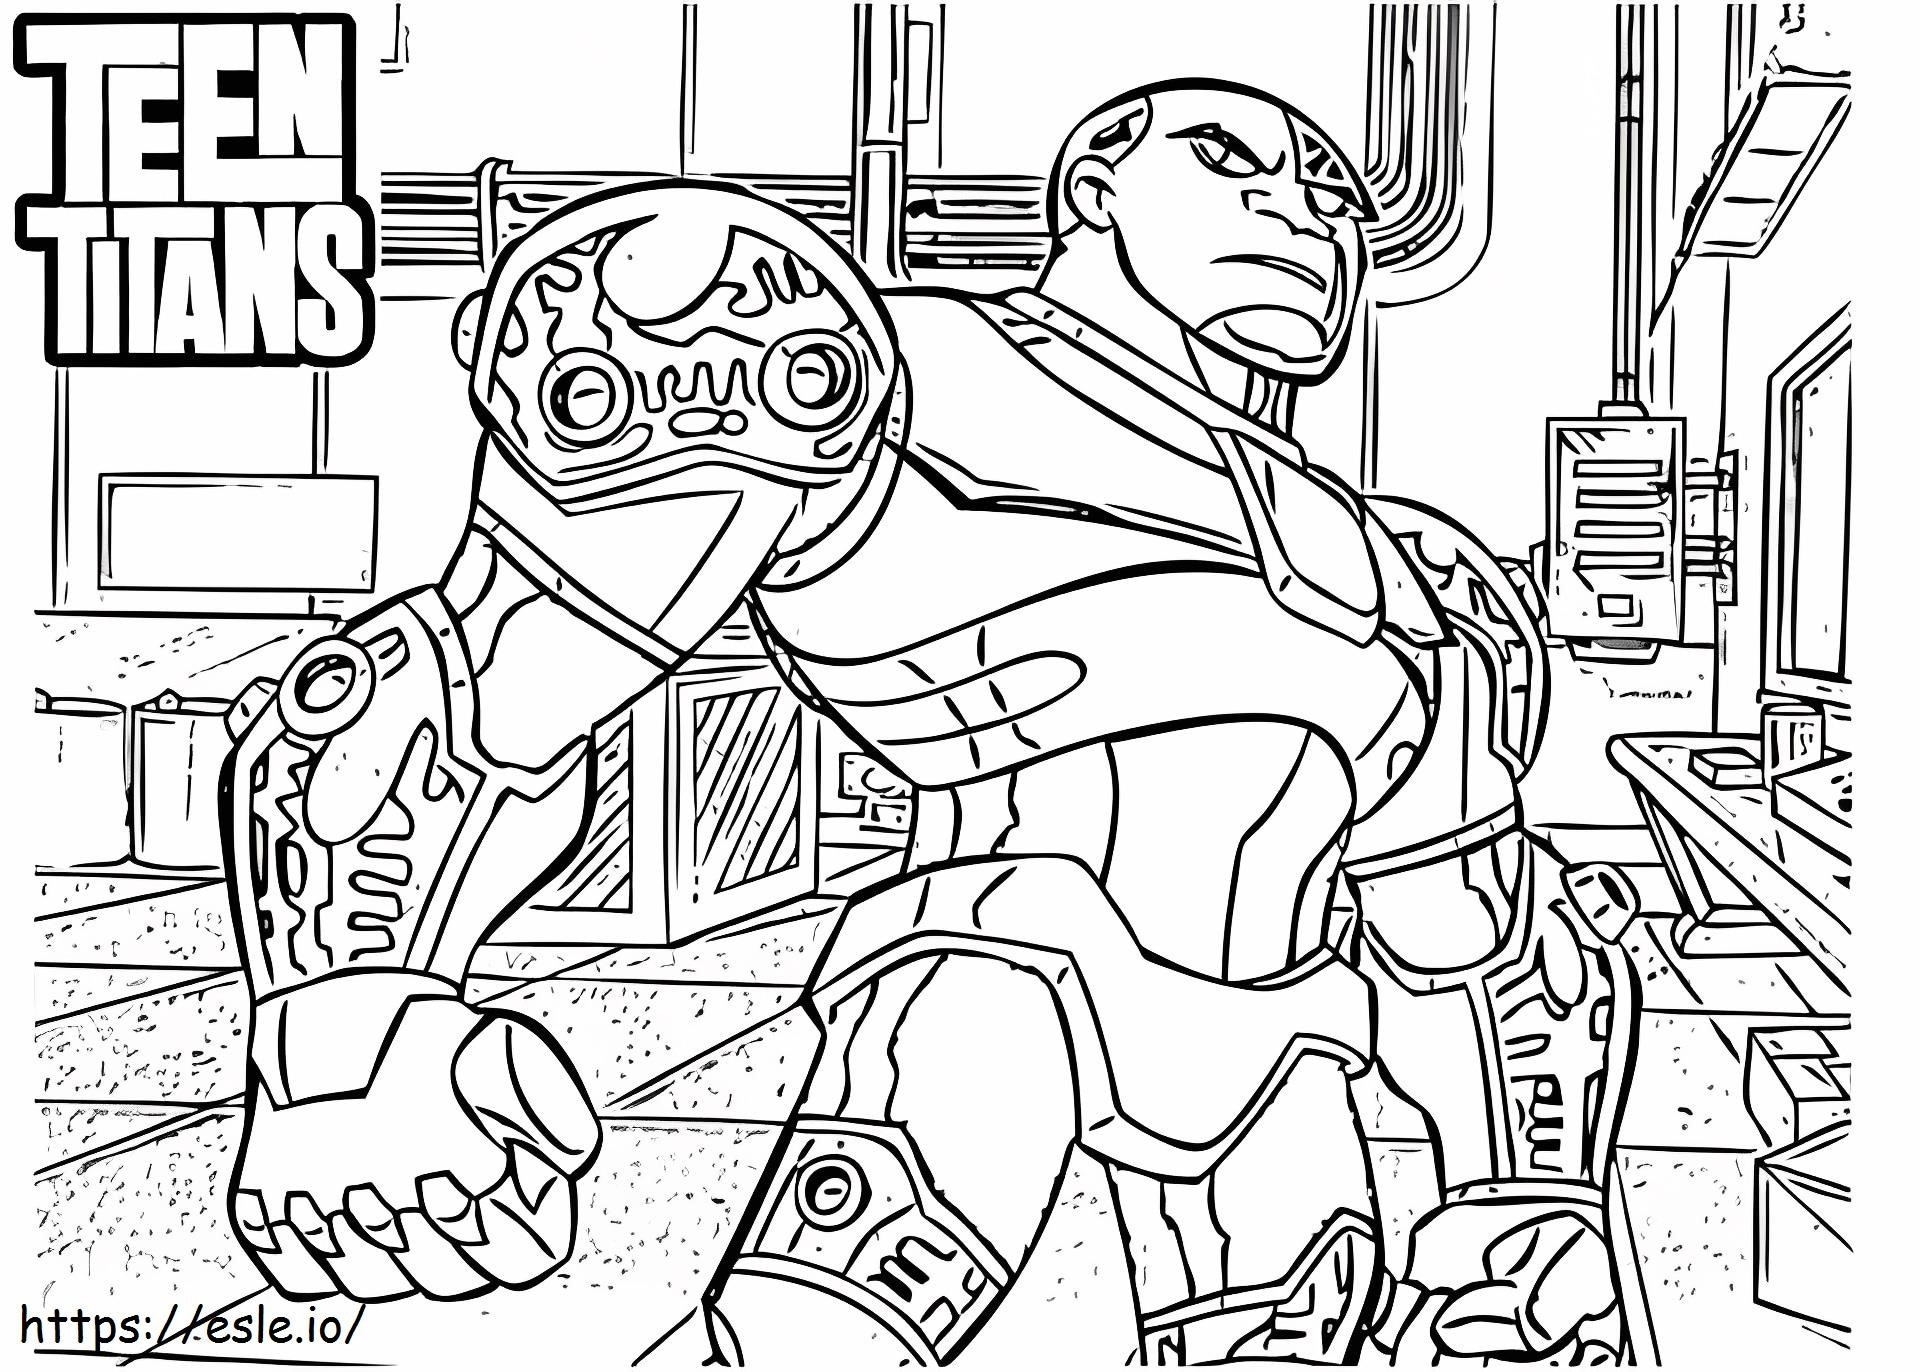 Cyborg uit de Teen Titans kleurplaat kleurplaat